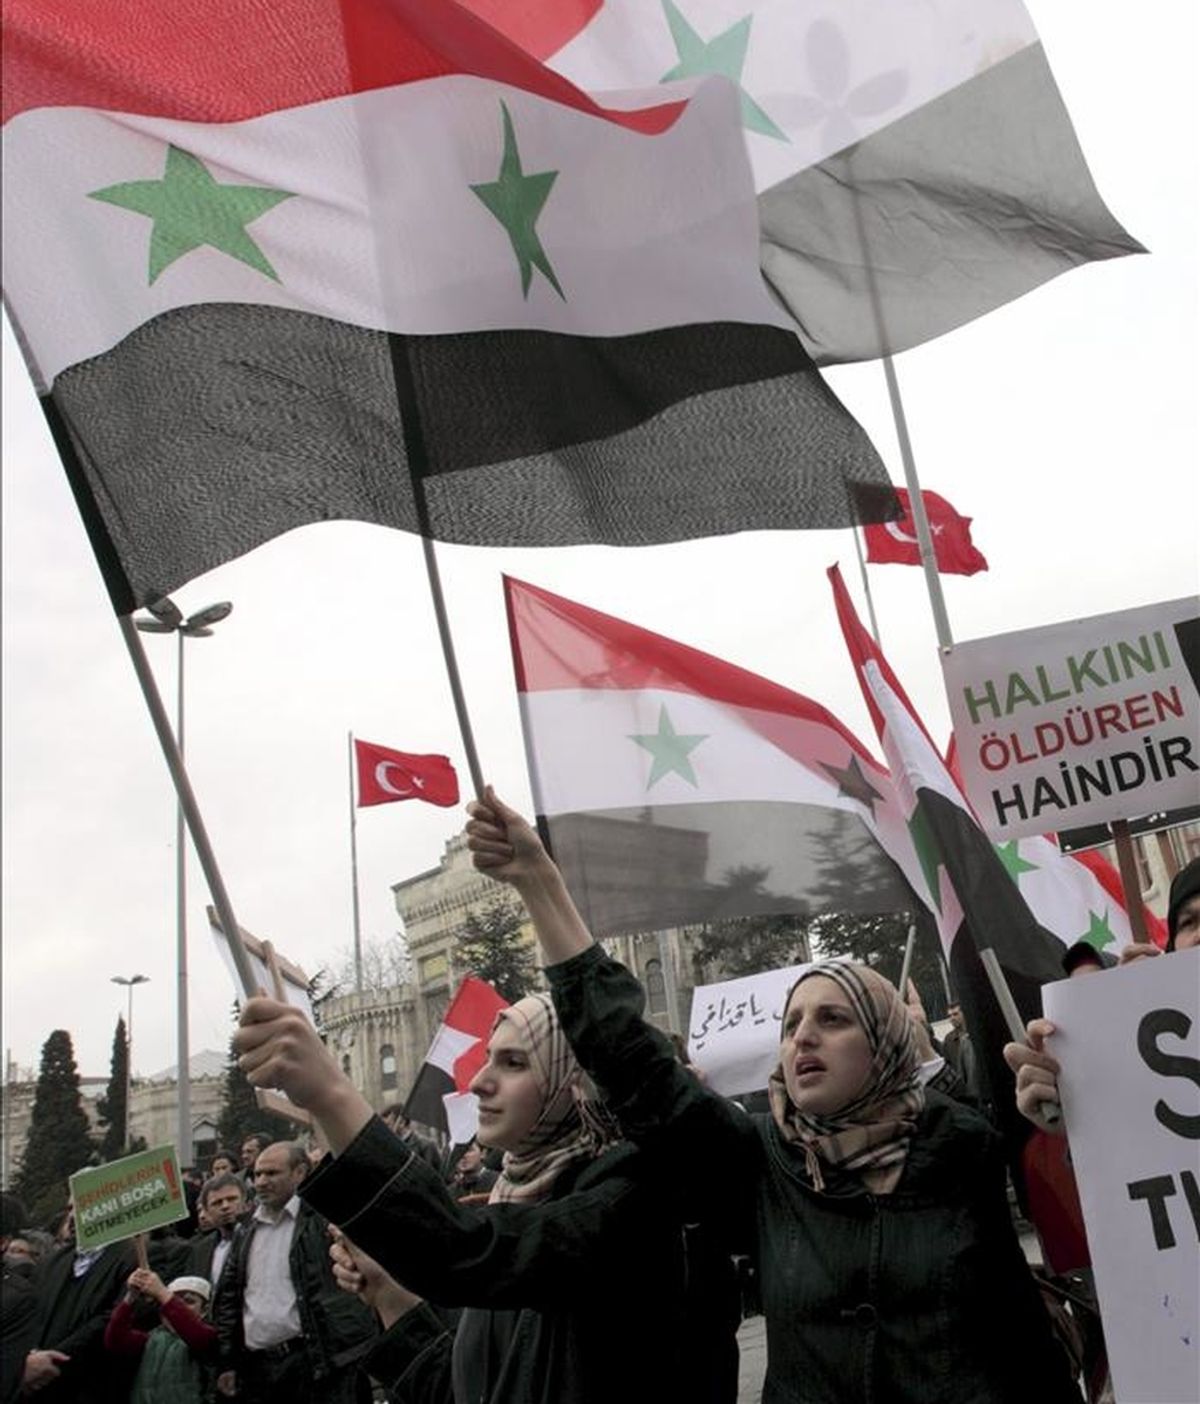 Un grupo de manifestantes participa en una protesta contra el gobierno del presidente sirio, Bachar al Asad, el 15 de abril de 2011 en Estambul (Turquía). EFE/Archivo